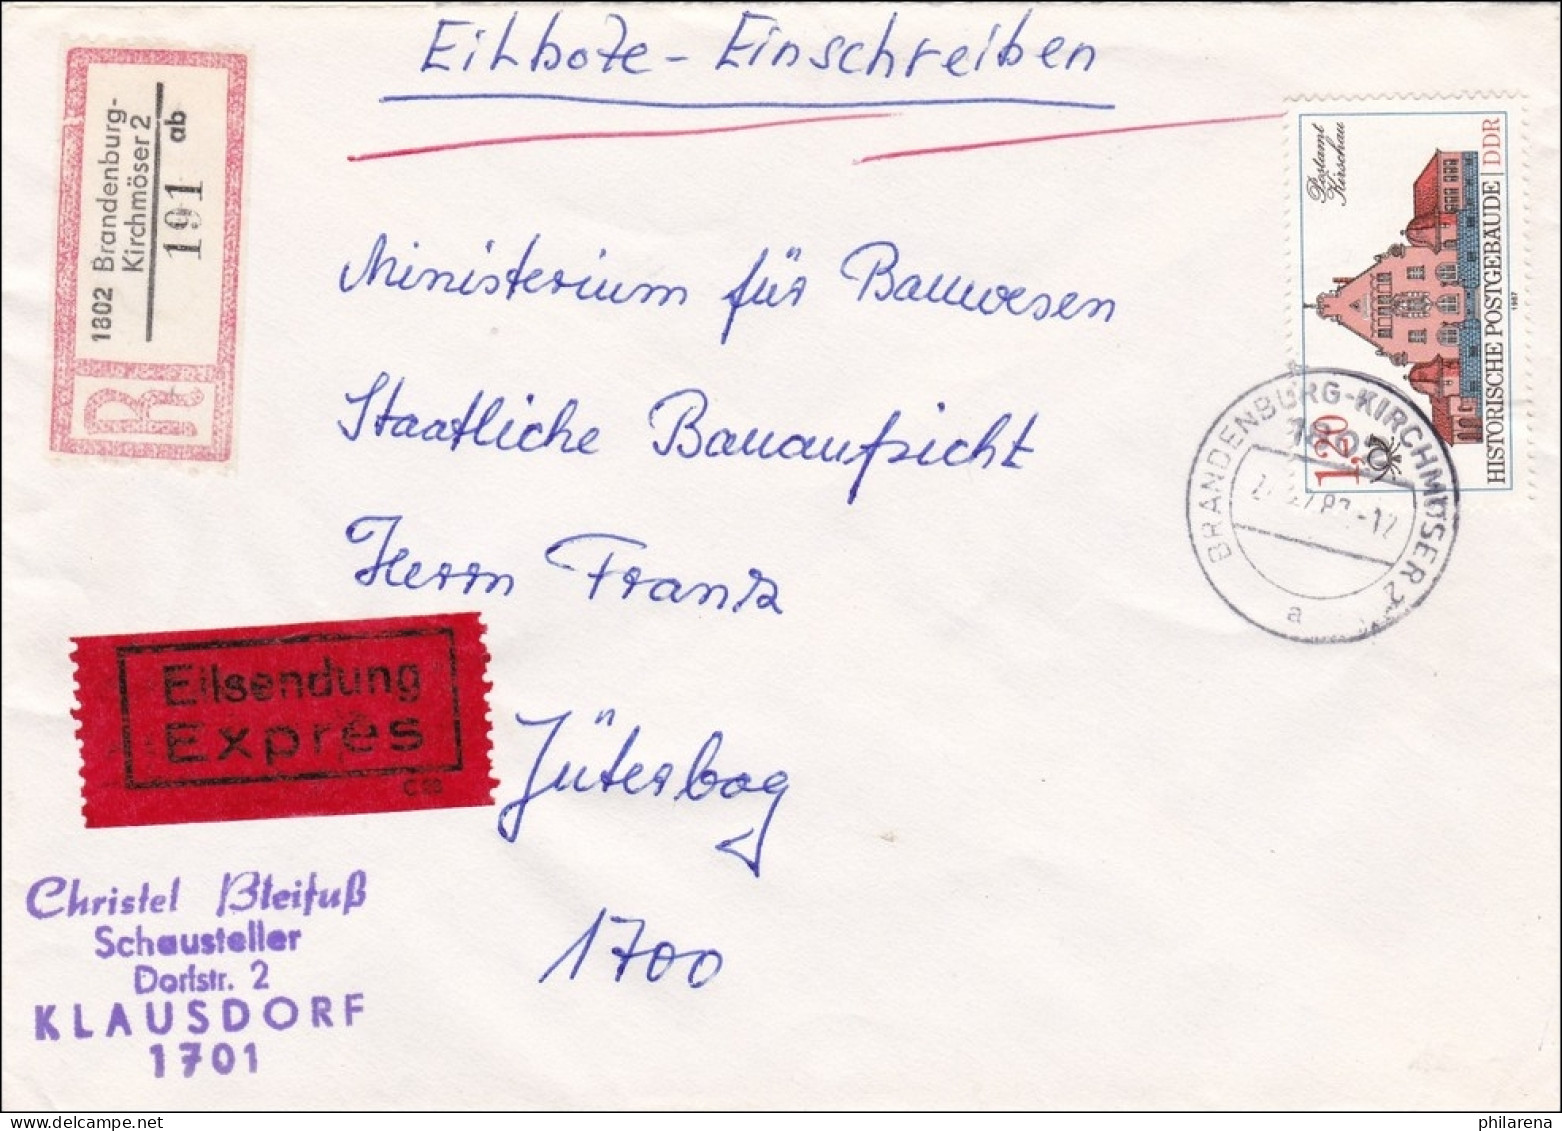 DDR: 1983: Eilboten-Einschreiben Von Brandenburg Kirchmöser Nach Jüterbog - Covers & Documents